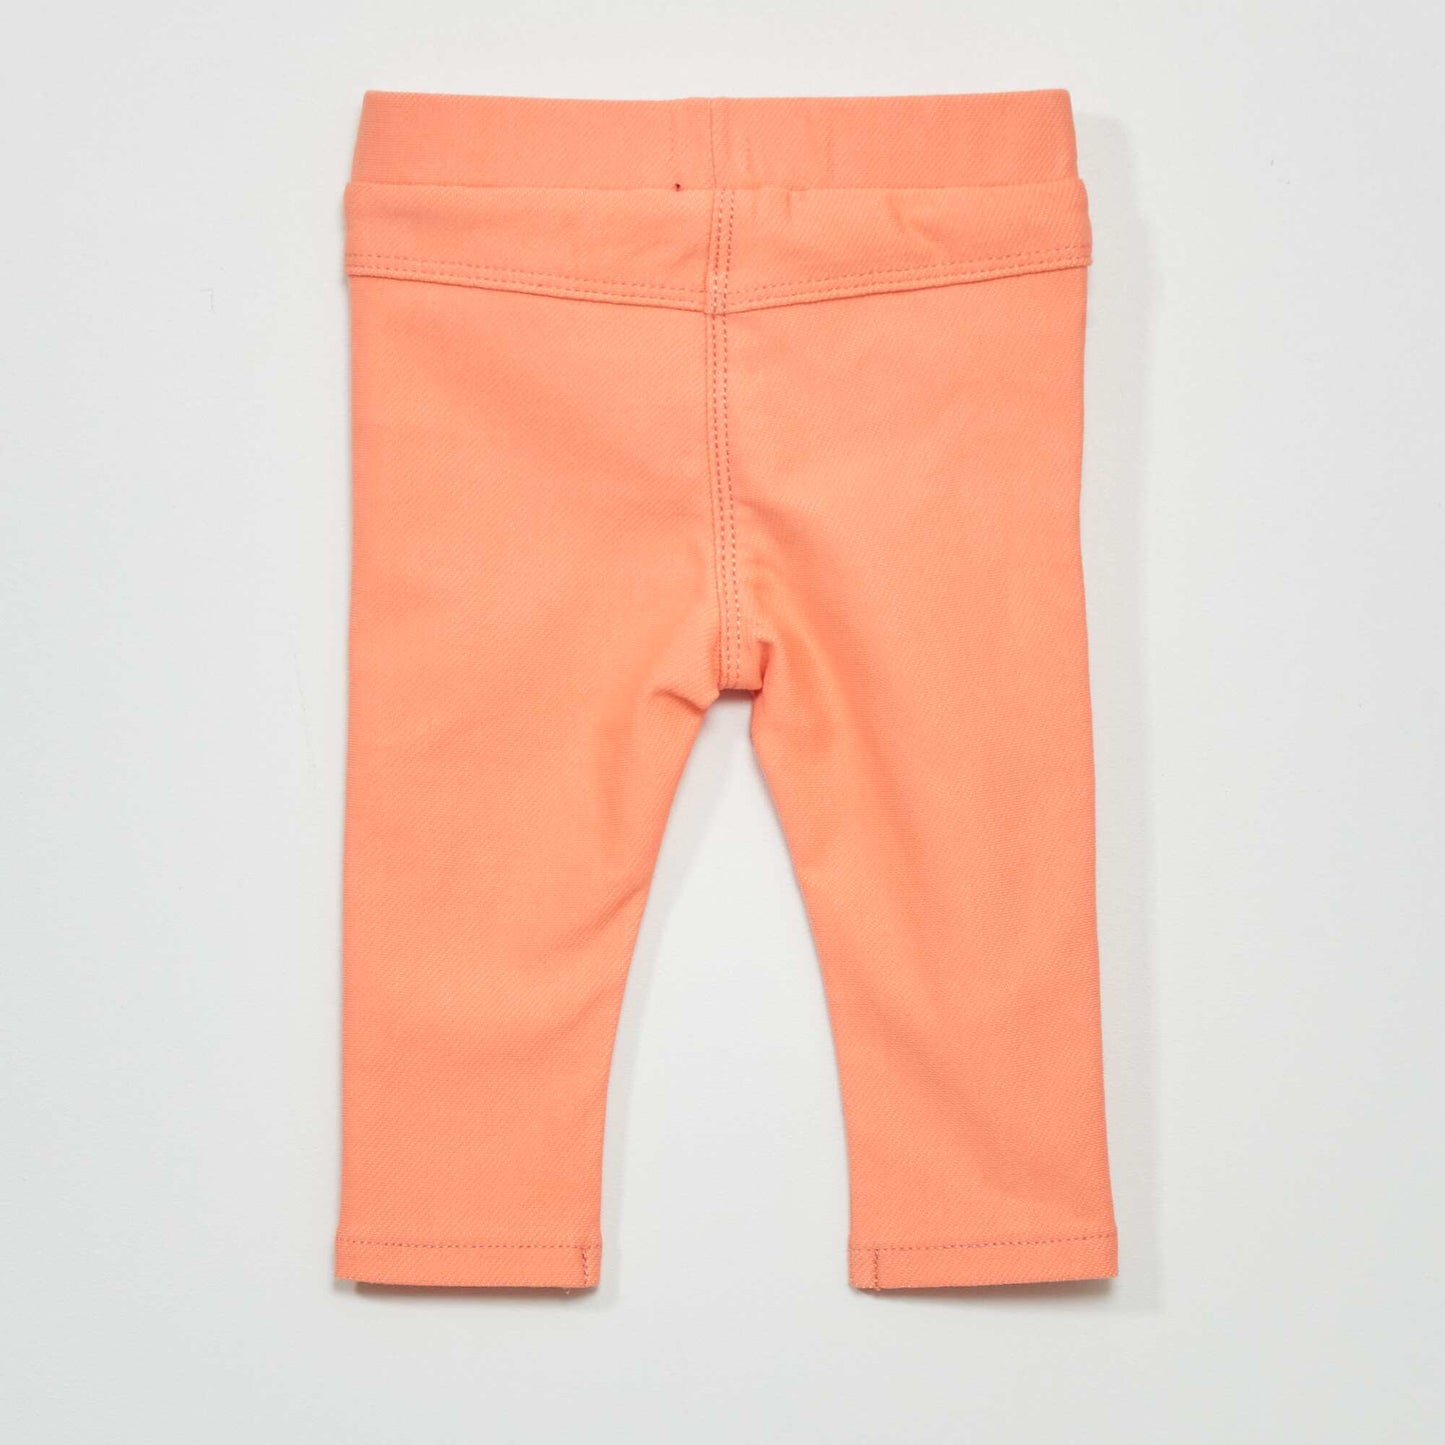 Pantalón Pamela de algodón elástico - Naranja